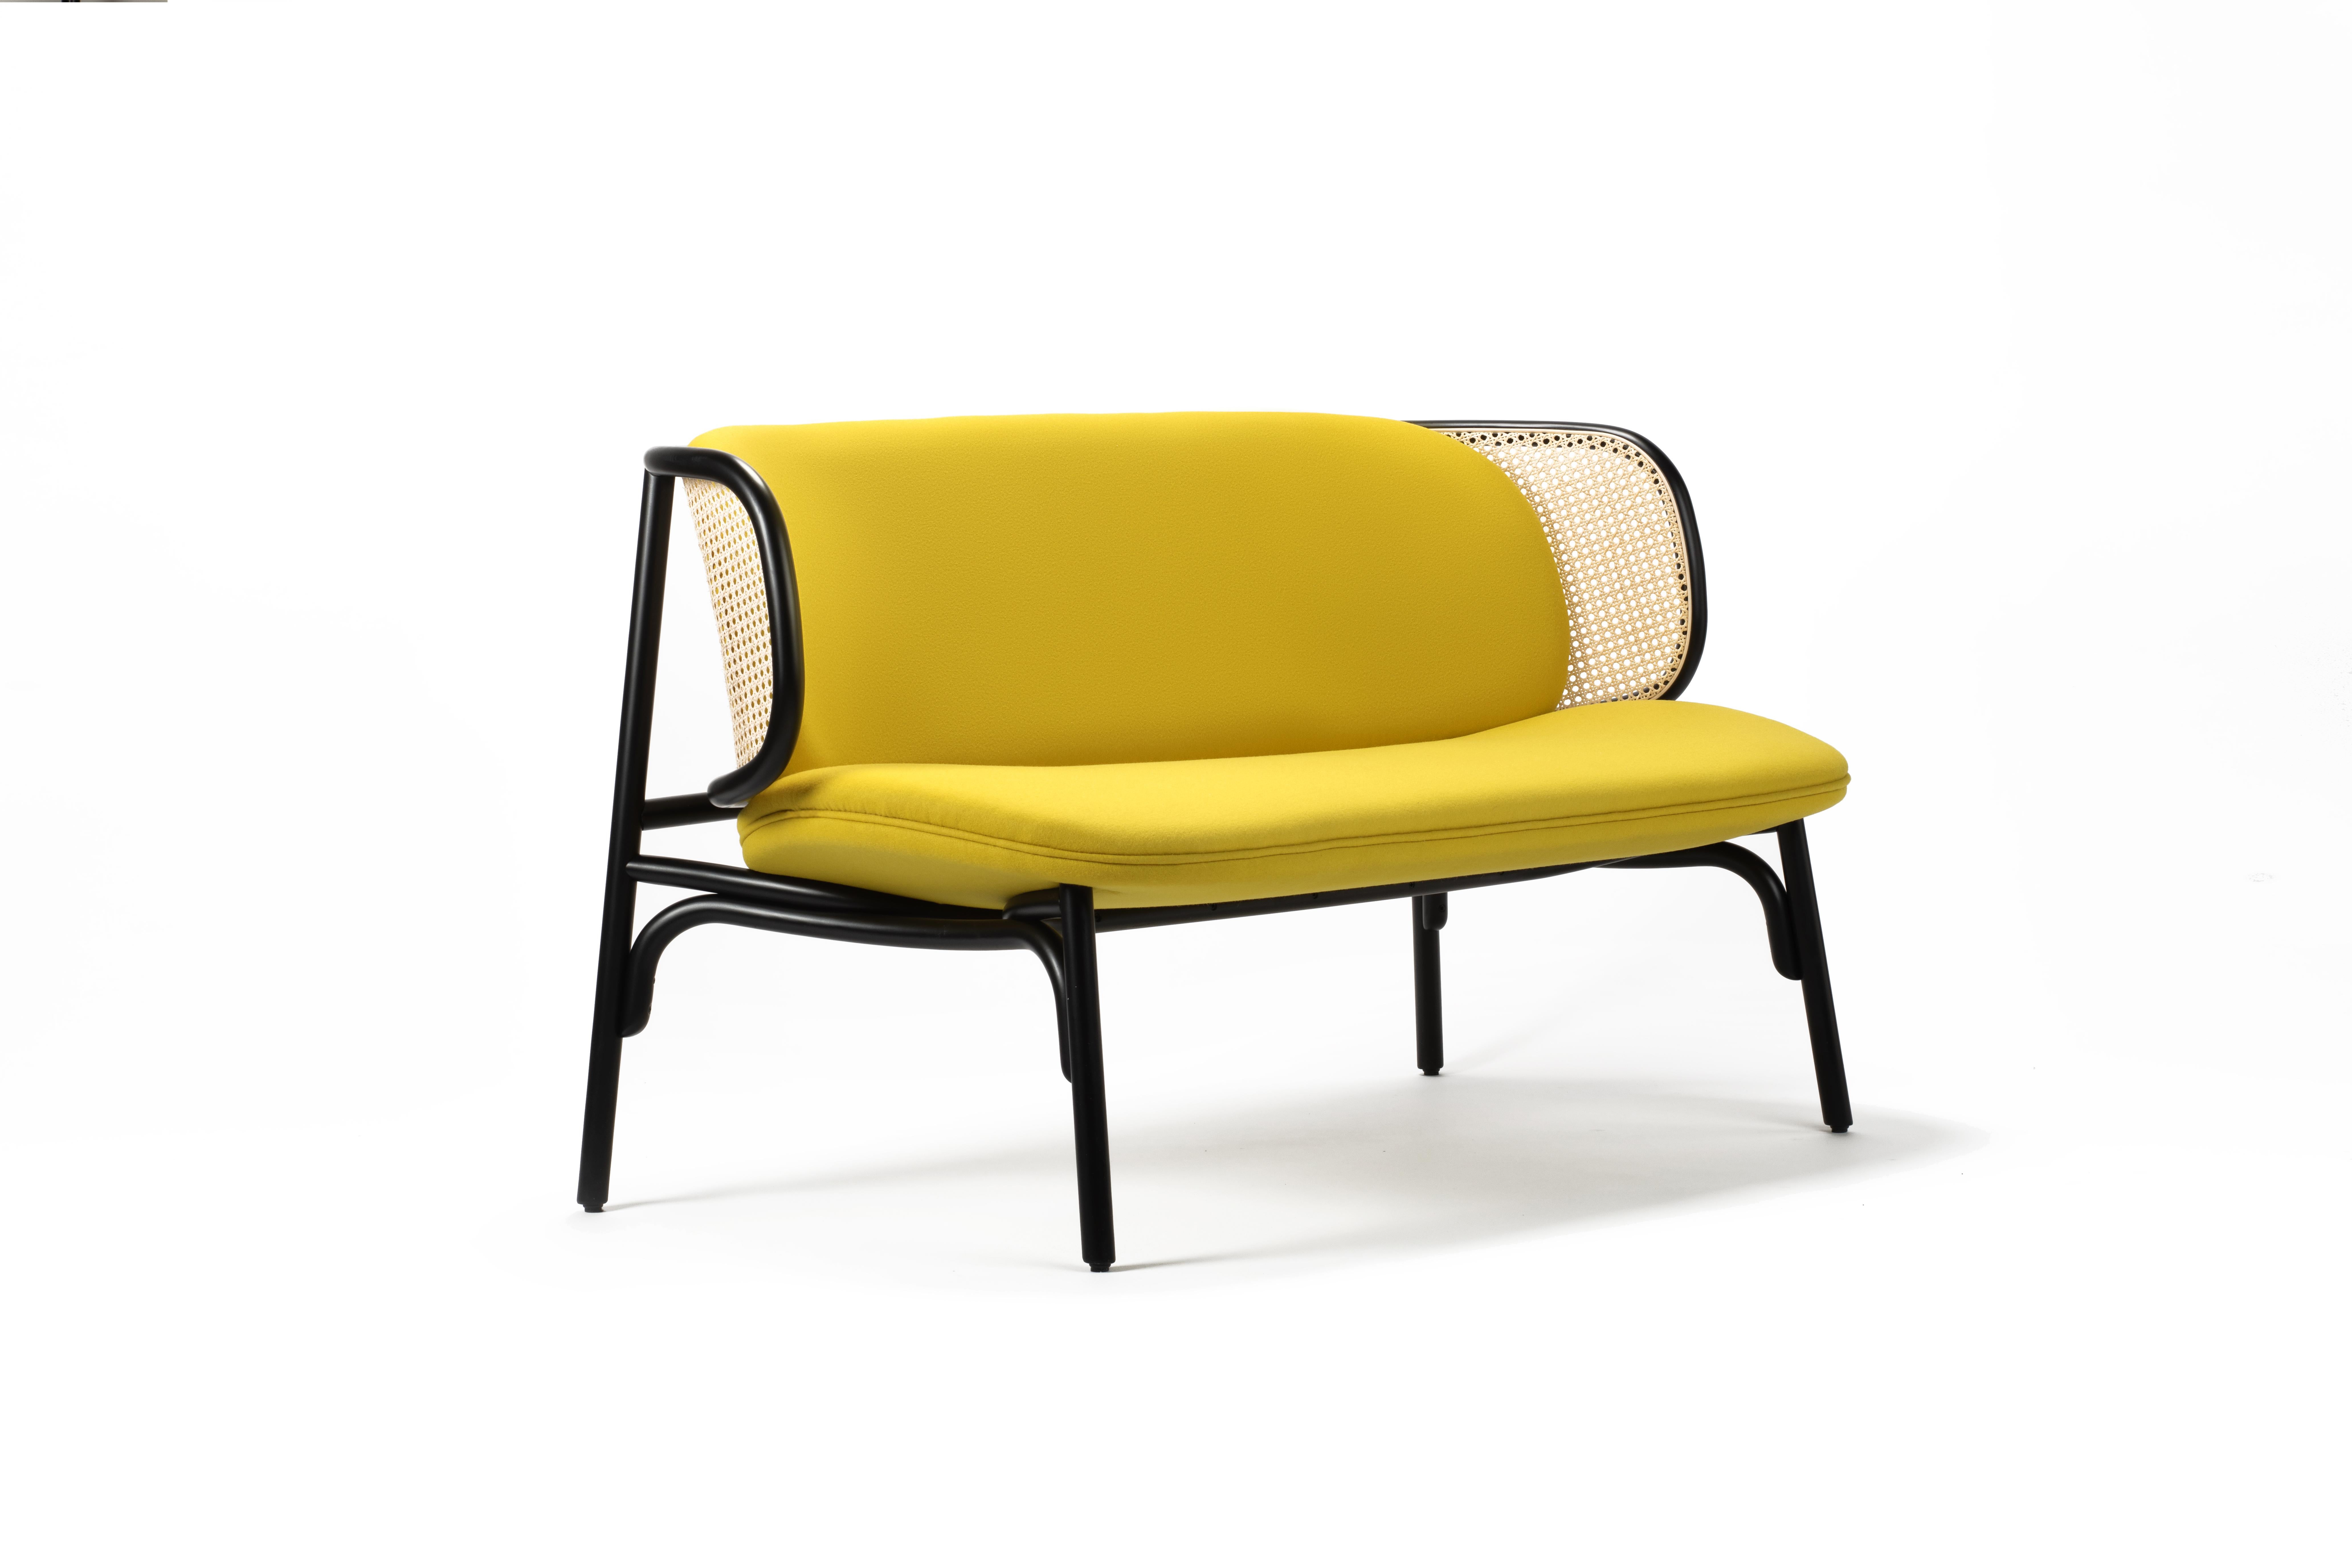 Gebrder Thonet Vienna réaffirme la collaboration avec Chiara Andreatti avec le nouveau canapé SUZENNE SOFA, un canapé deux places qui intègre les caractéristiques esthétiques du fauteuil de salon du même nom. Un projet avec un esprit contemporain,